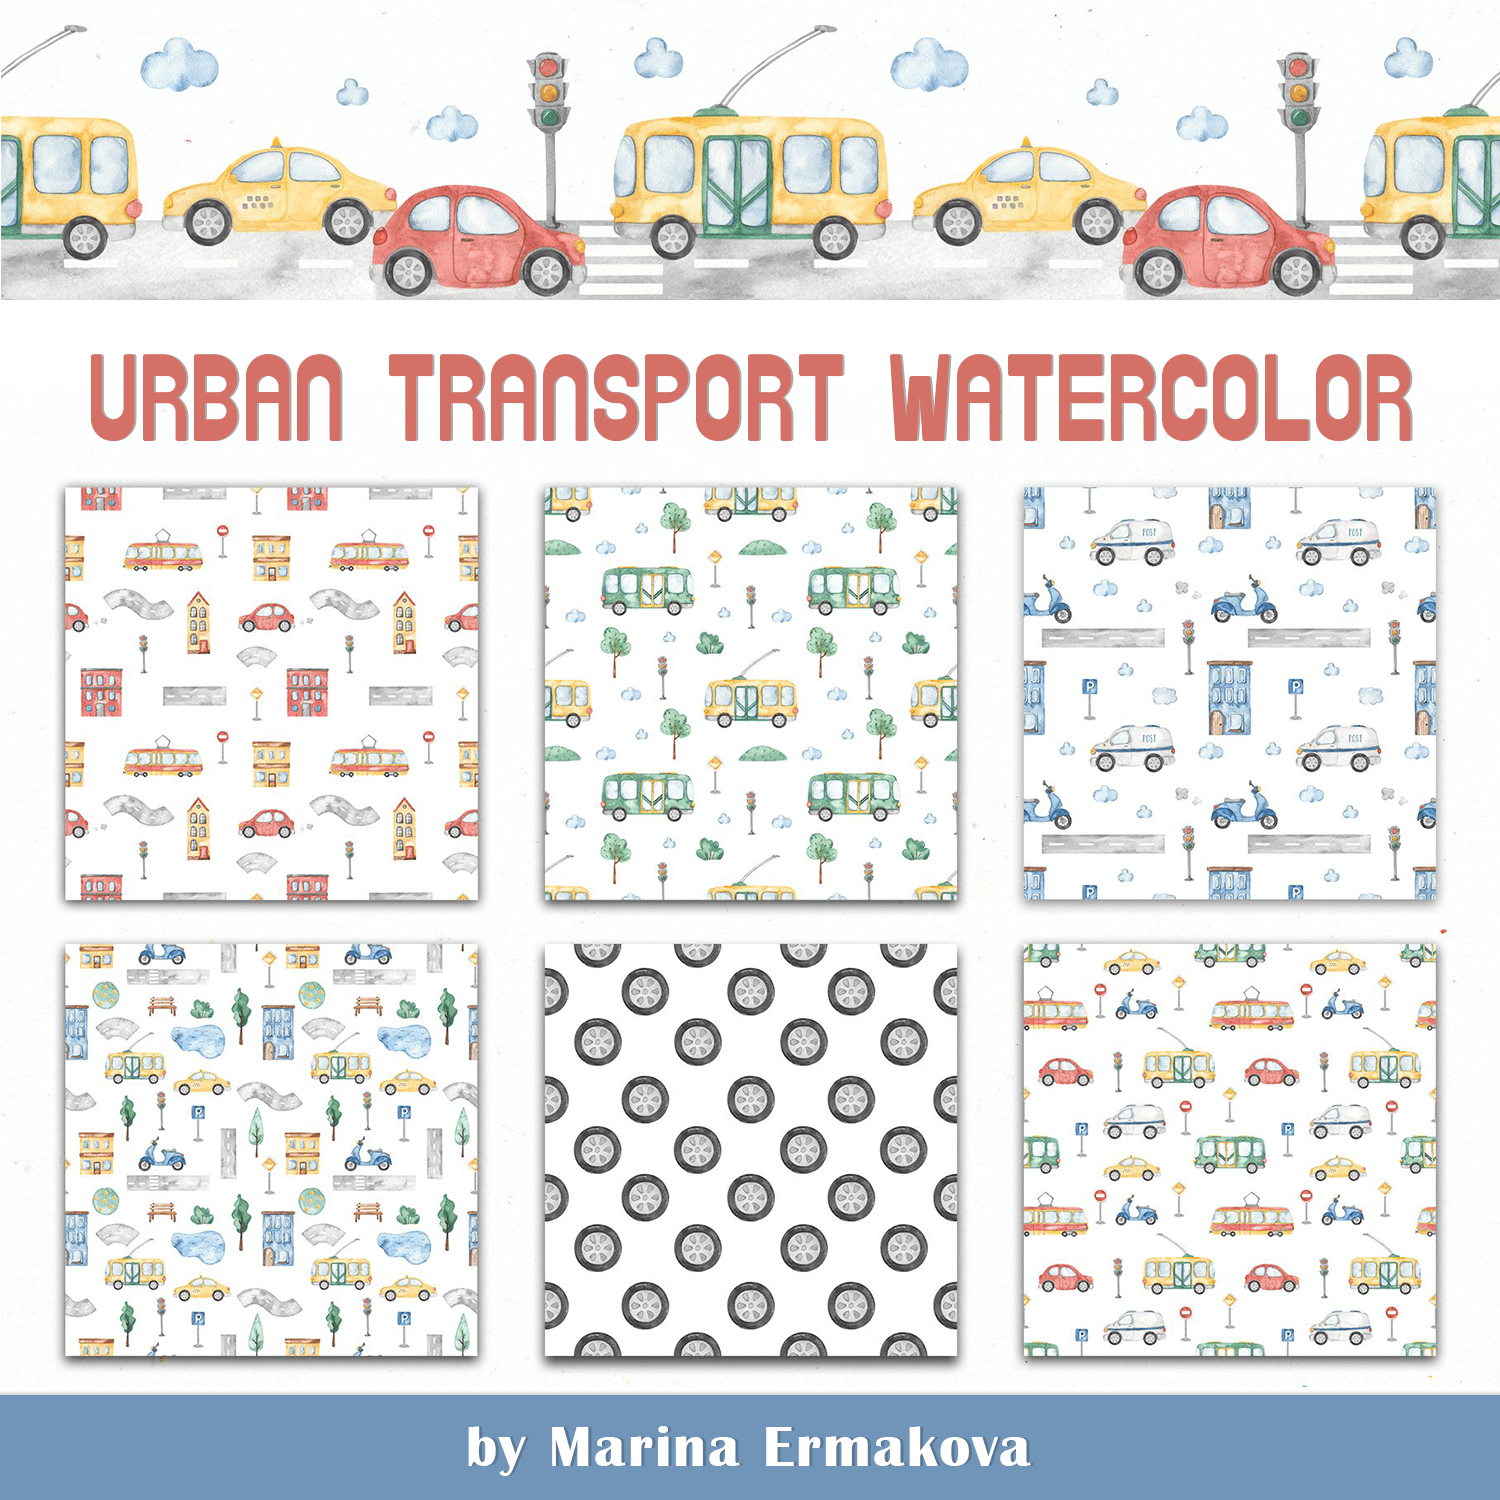 Urban transport watercolor.